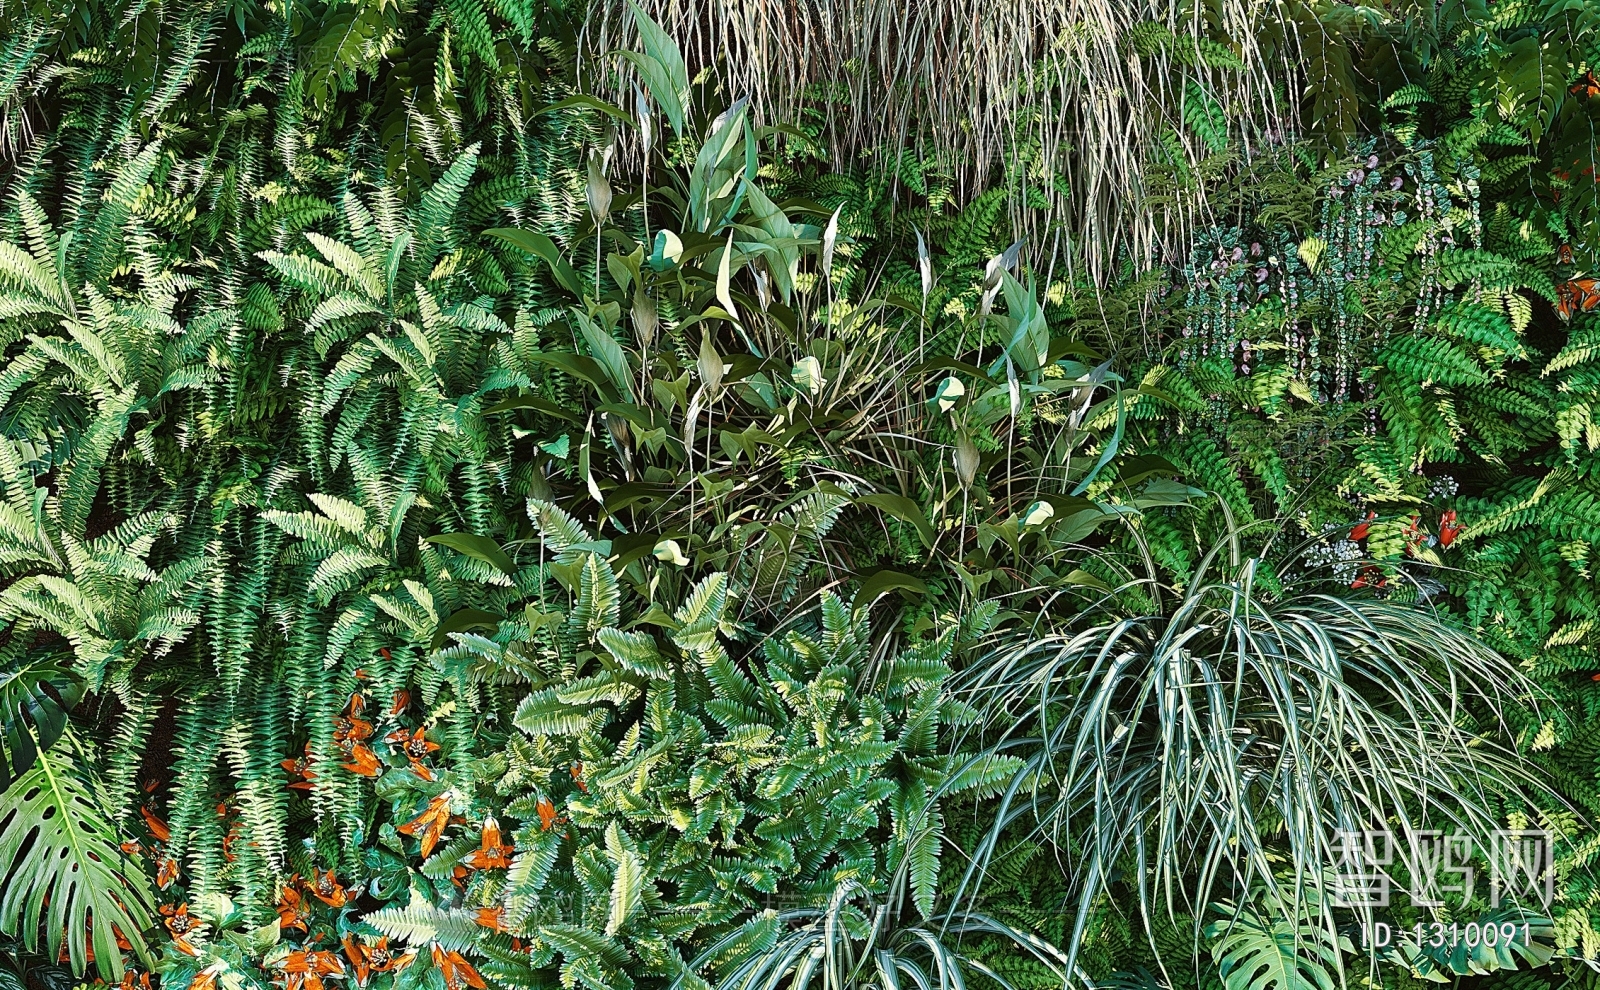 现代植物墙